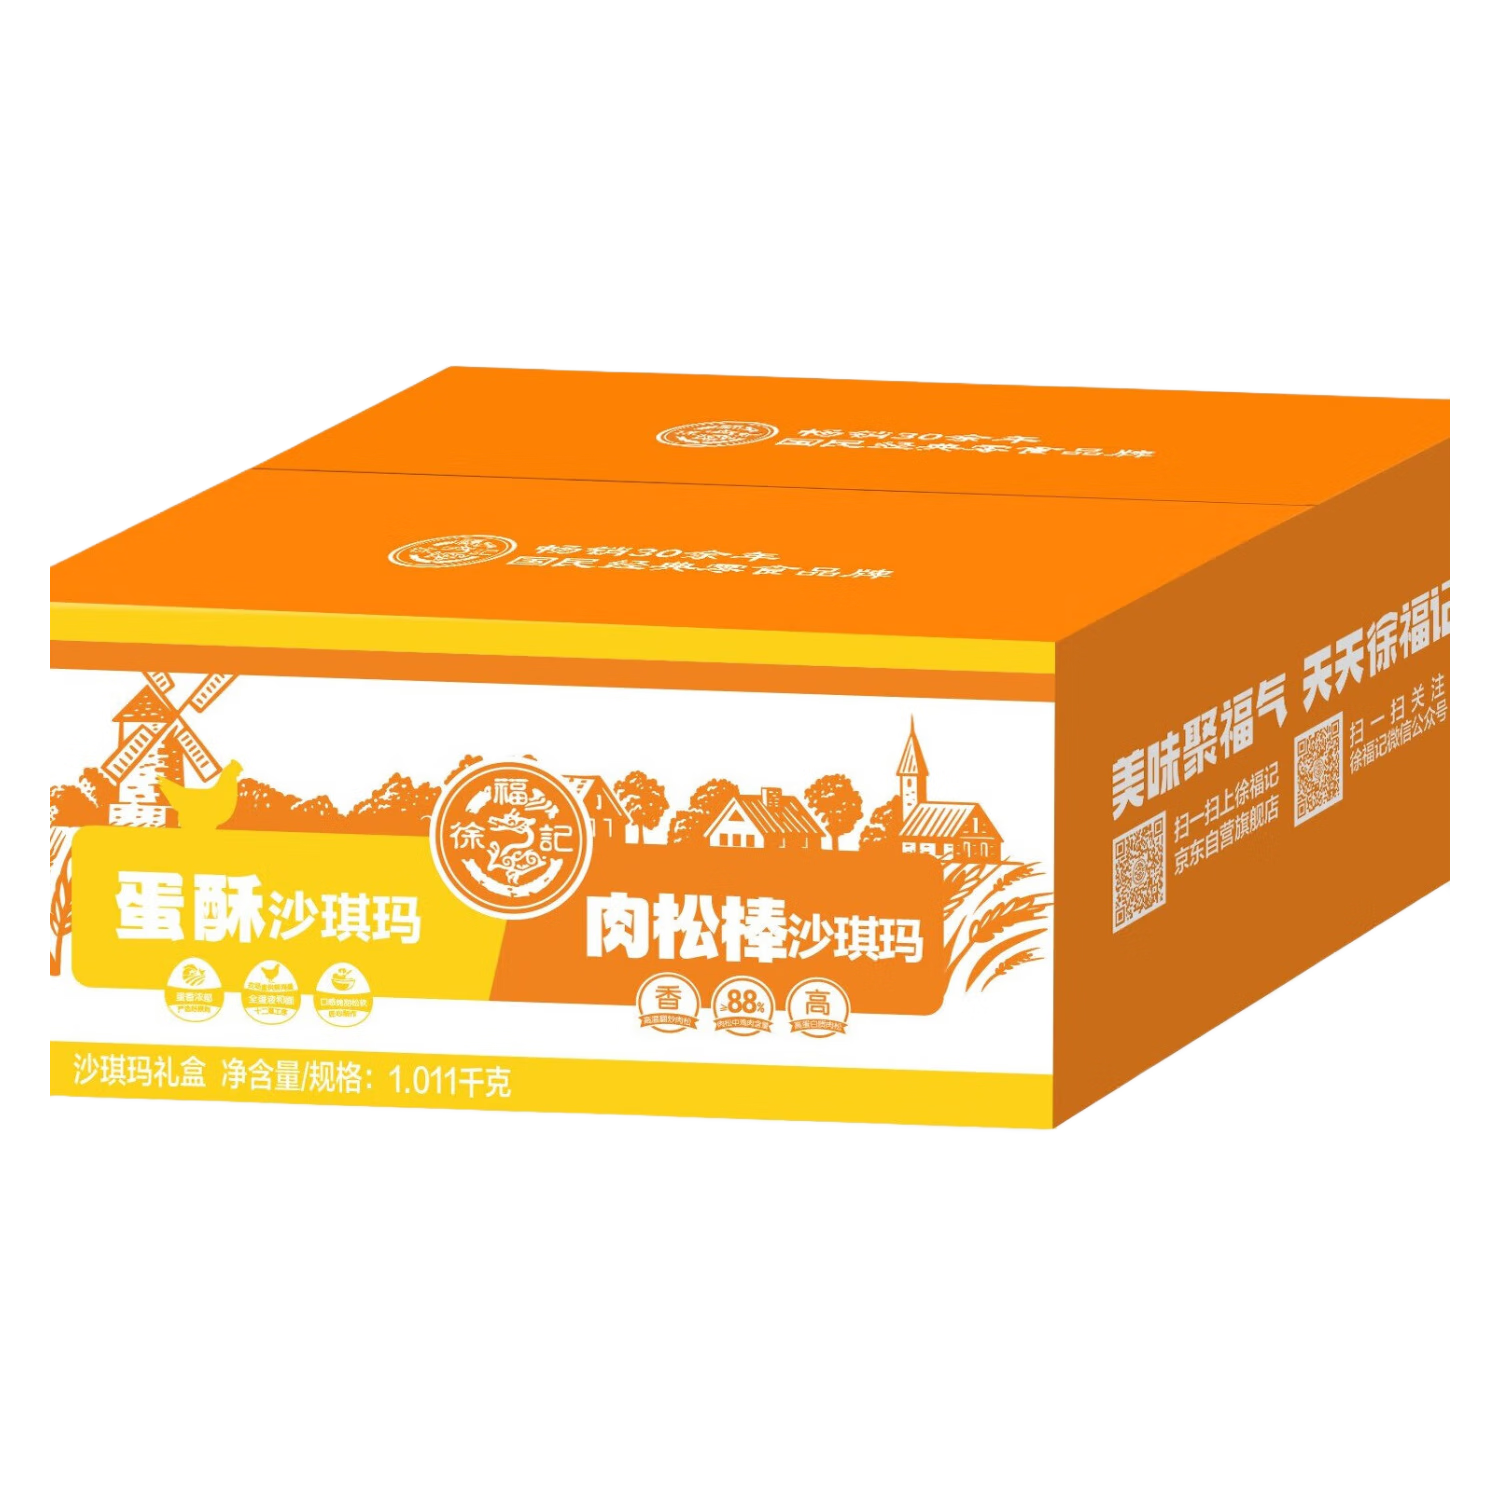 徐福记沙琪玛混合口味超值囤货箱装1.011kg 营养早餐 下午茶